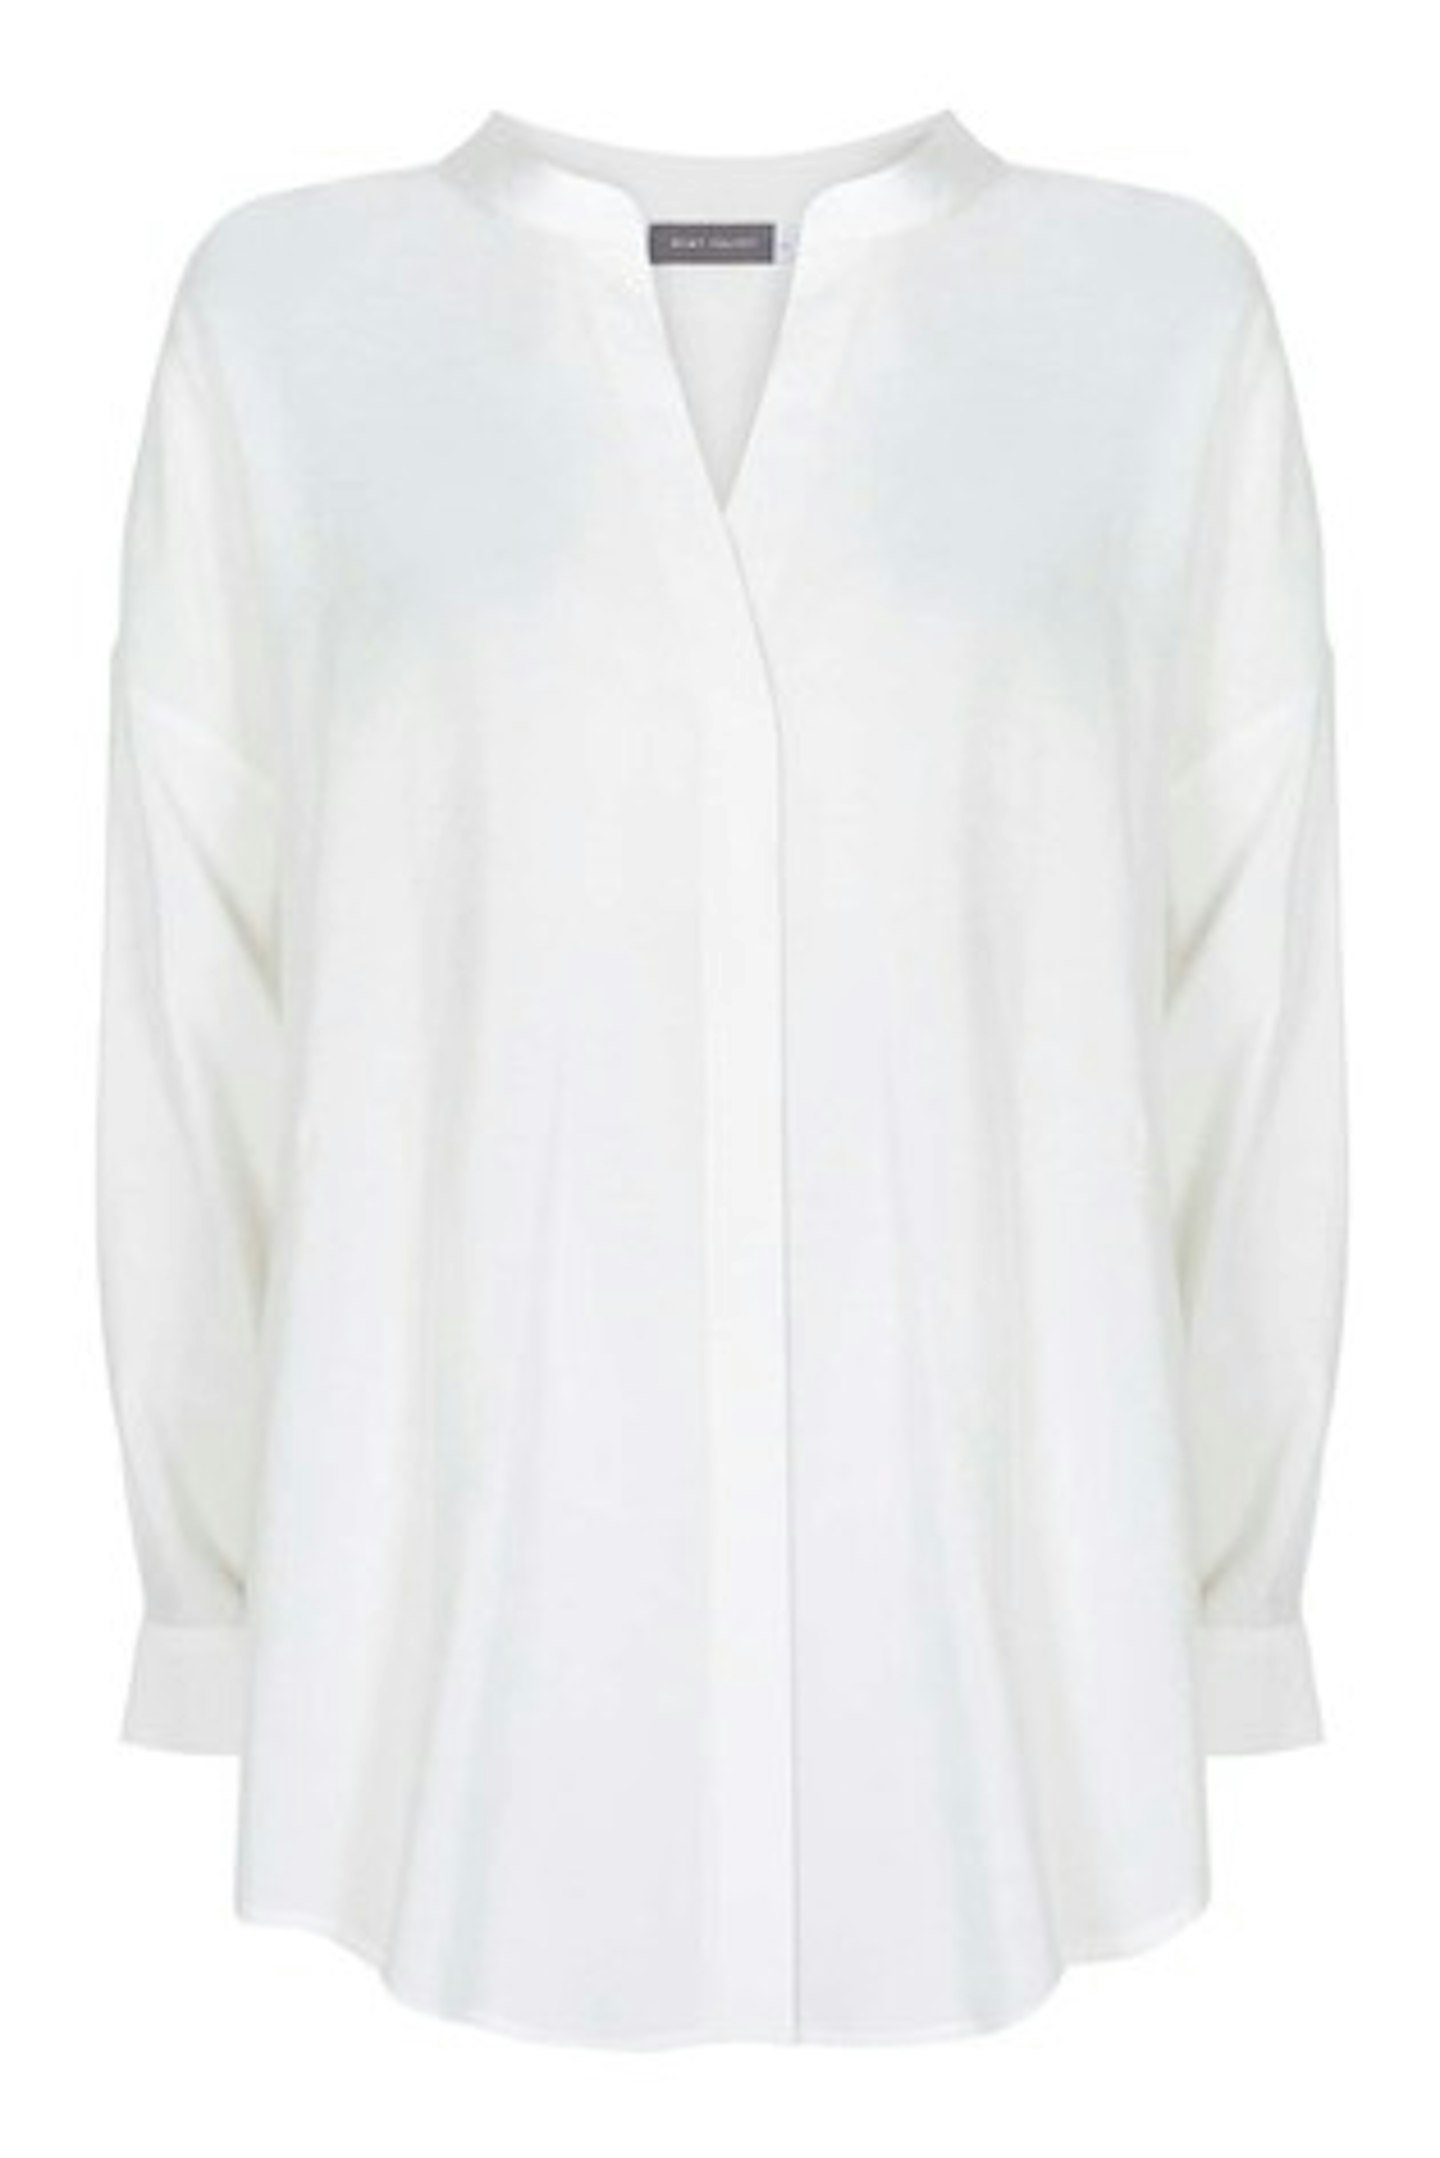 Mint Velvet White Oversized Longline Shirt